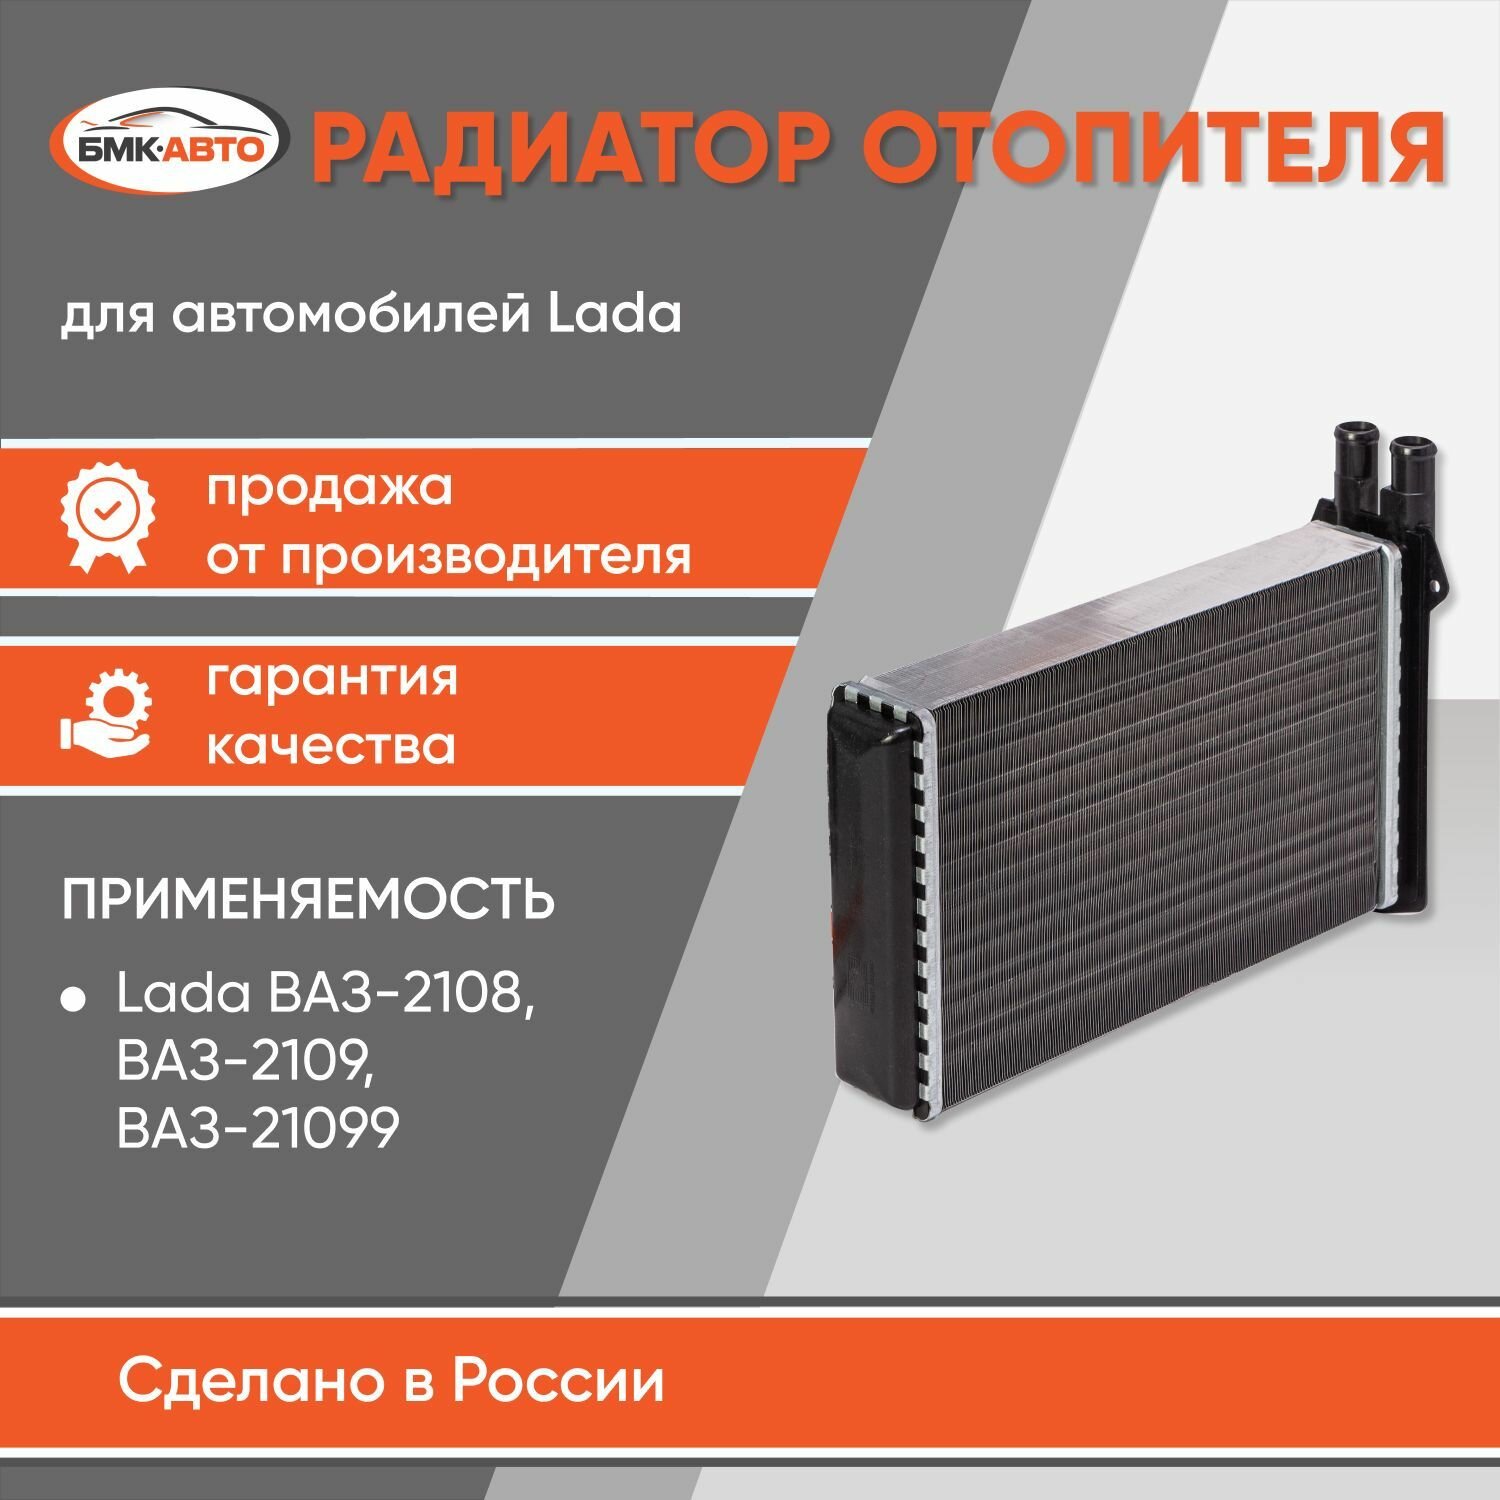 Радиатор отопителя (печки) ВАЗ 2108, 2109. 21099, 2113, 2114, 2115 алюминиевый бмк-авто